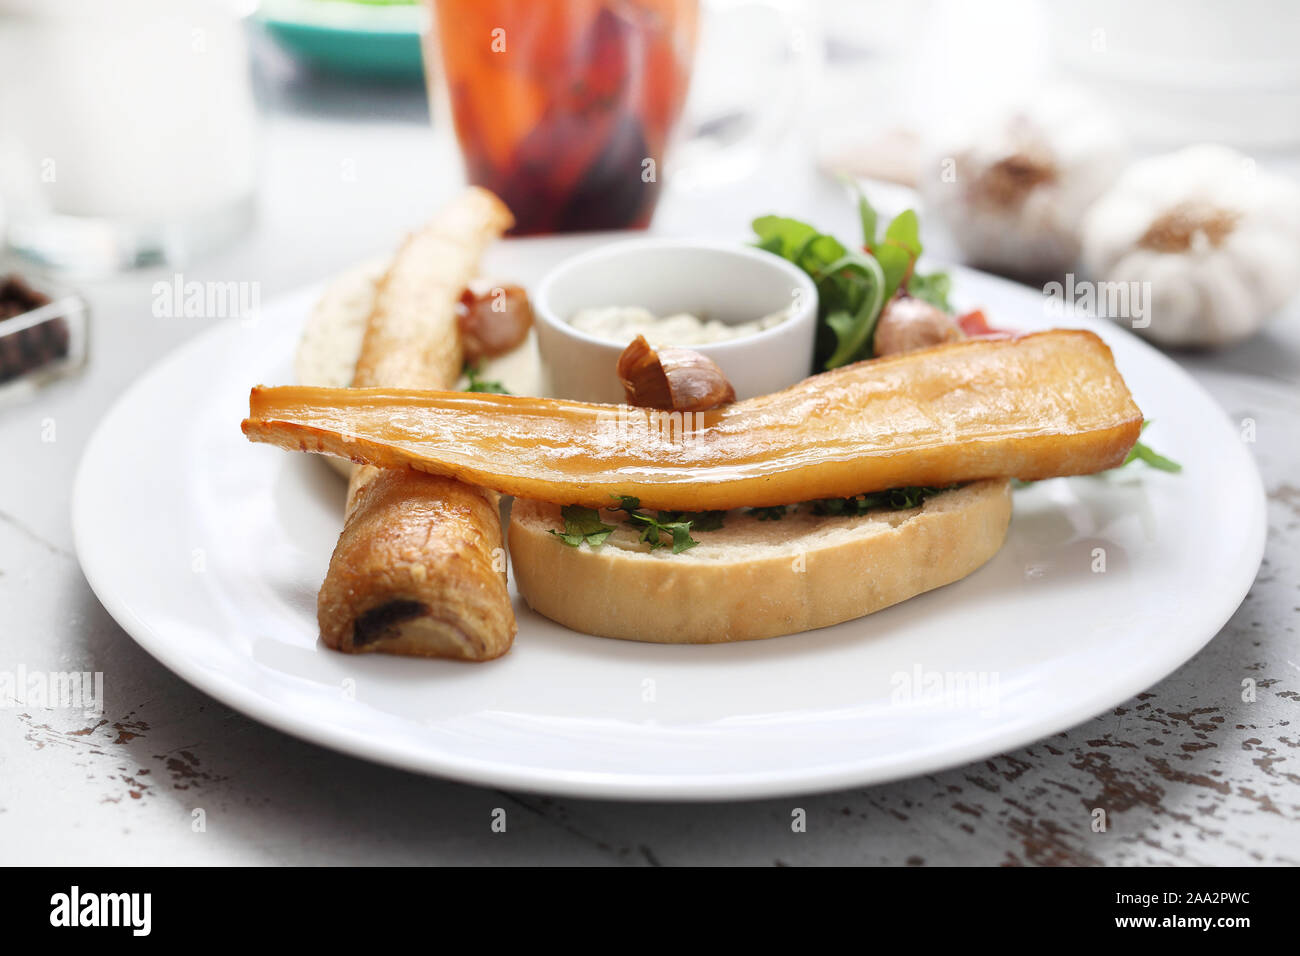 Petersilienwurzel gebacken in Honig Soße auf Toast. Rucola und Tomaten Salat, Knoblauch Sauce. Stockfoto